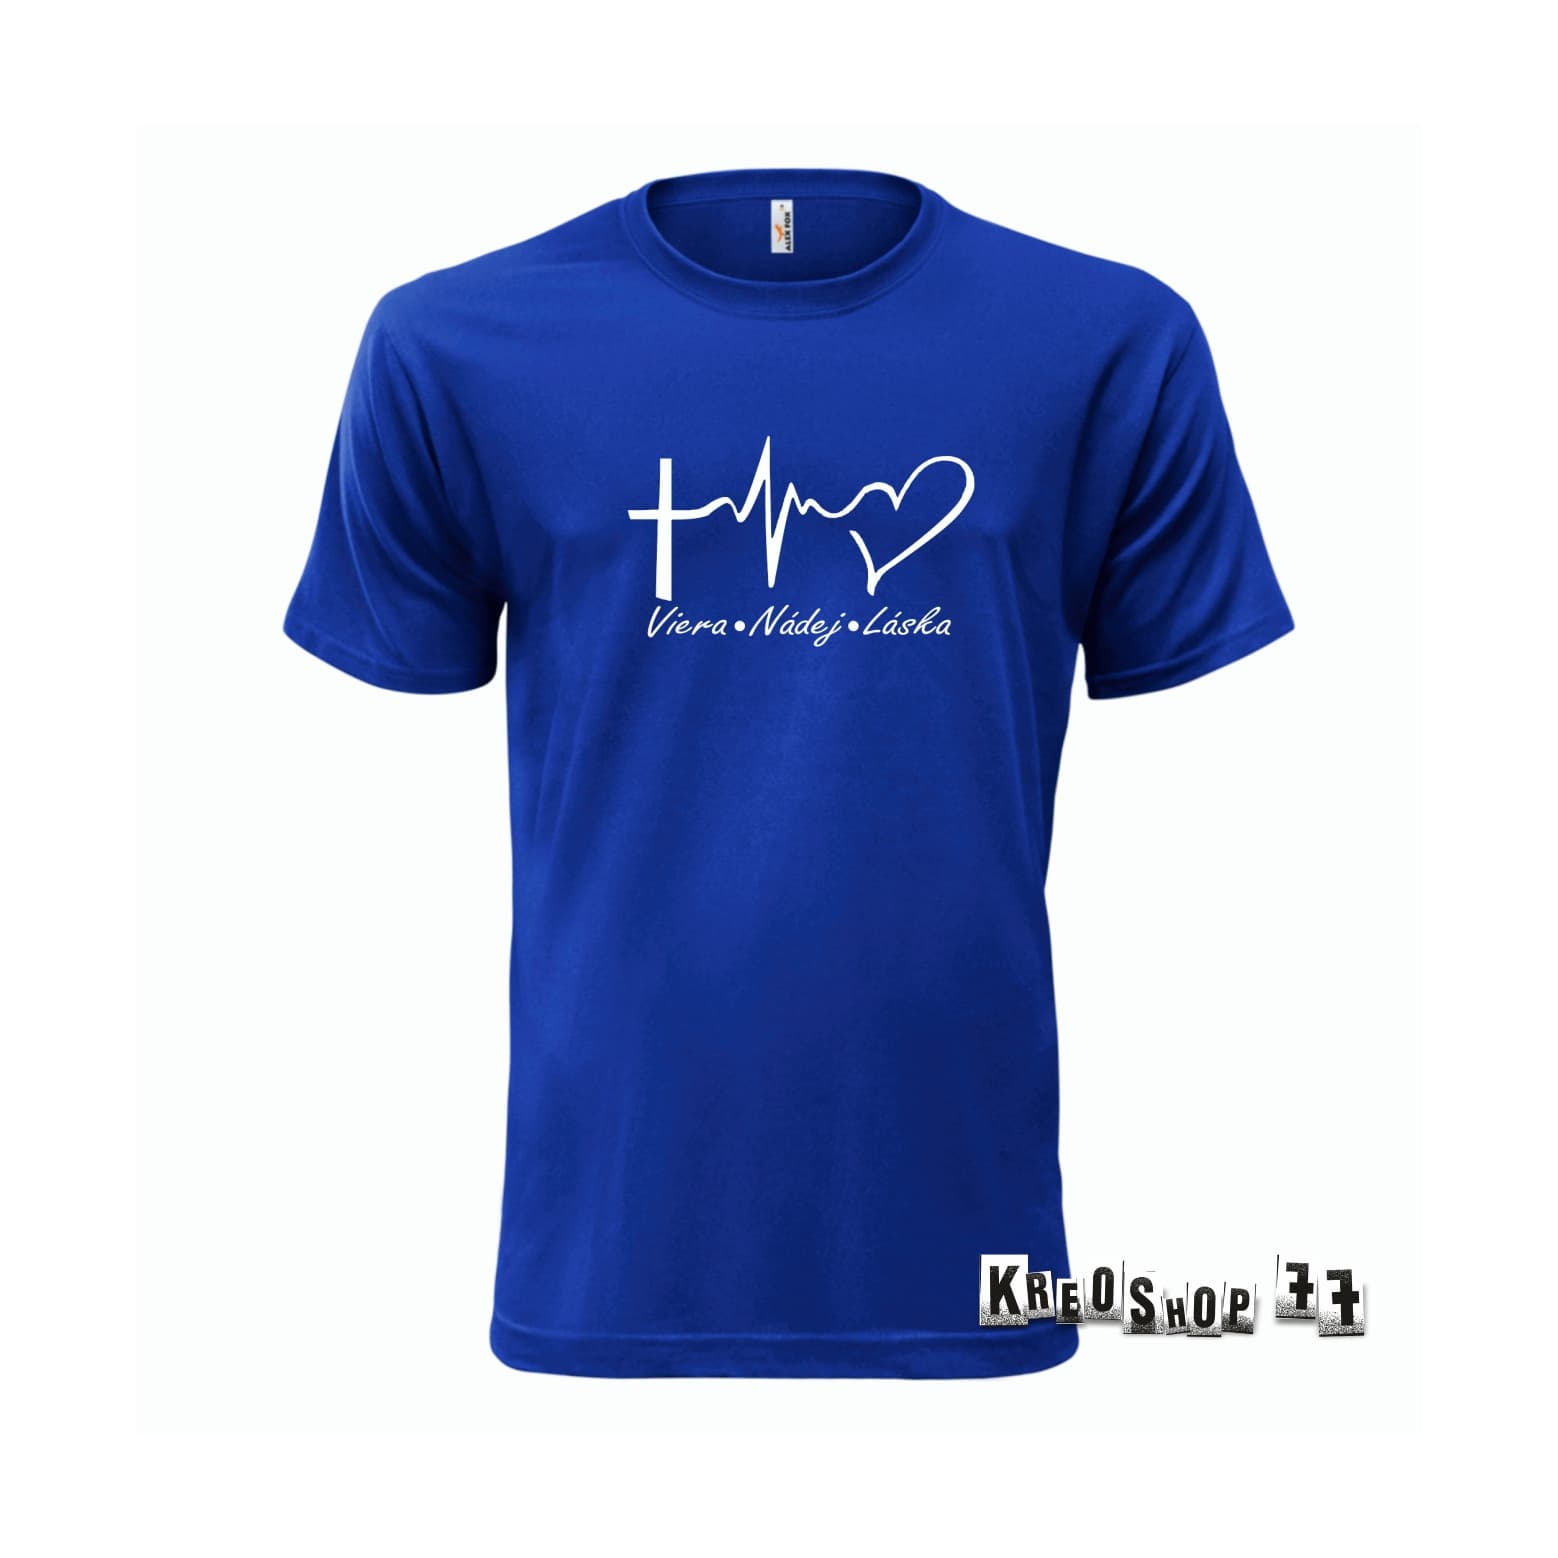 Kresťanské tričko - Viera, nádej, láska - modré